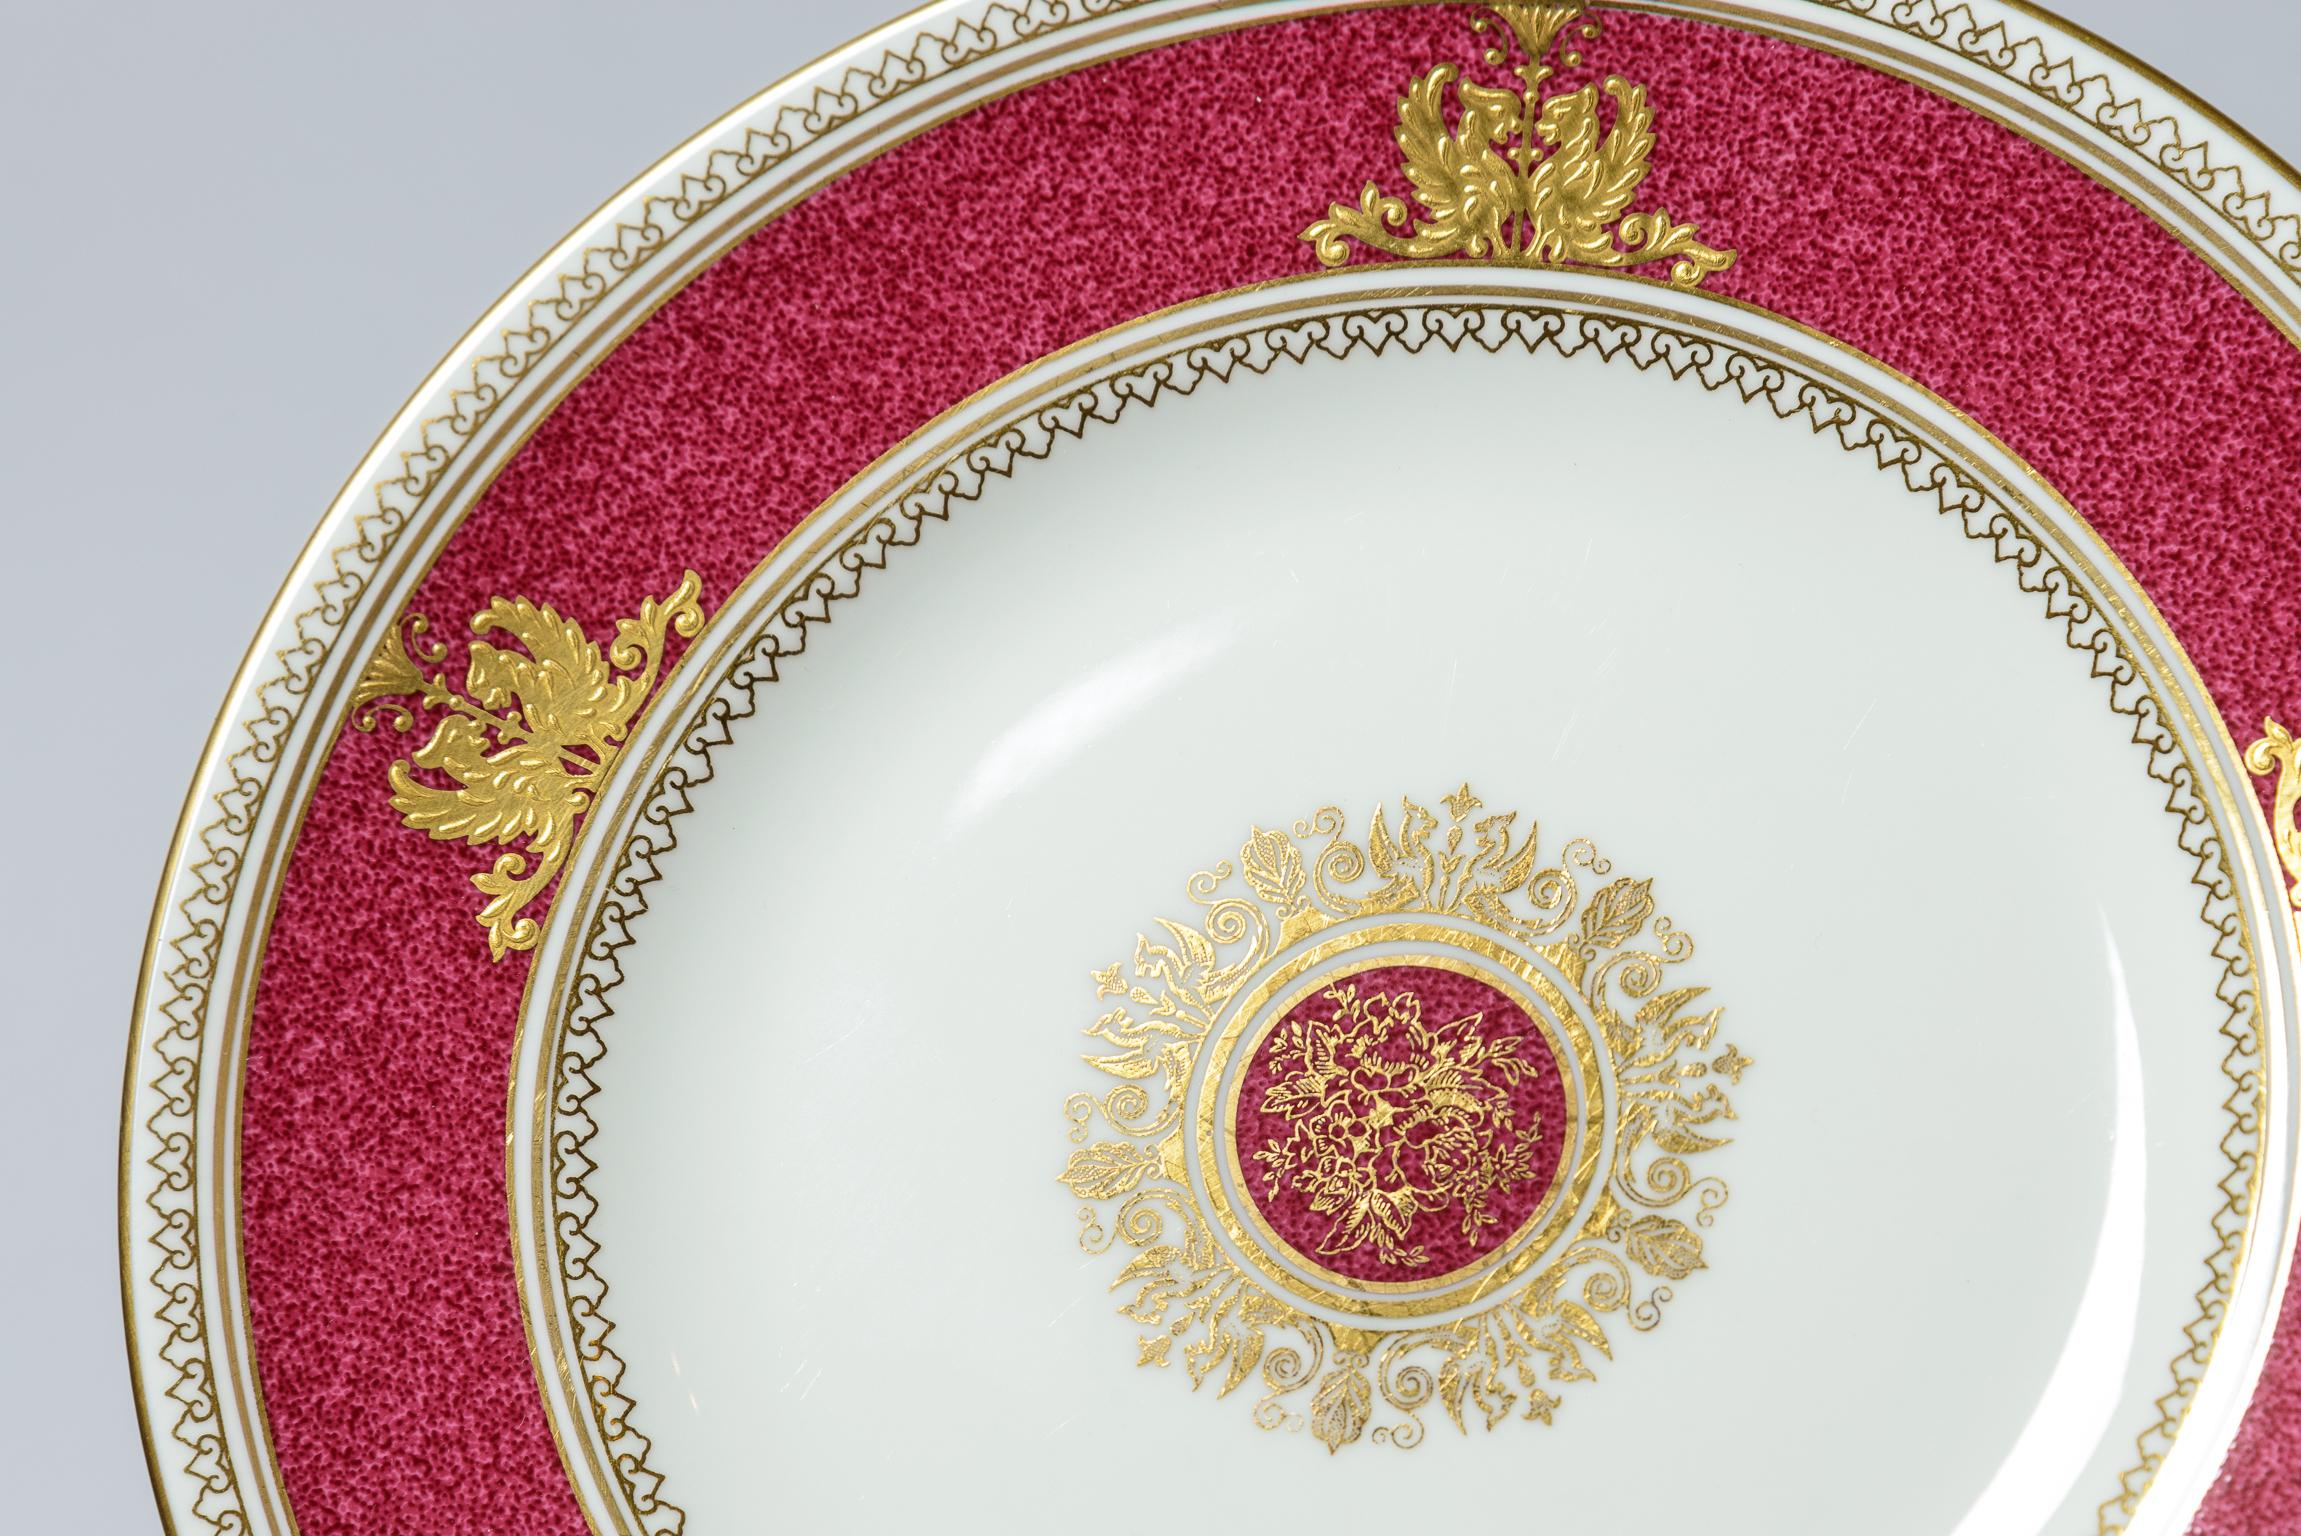 Un joli ensemble de 16 assiettes avec un col fini à la poudre de rubis, accentué par un double griffon en relief, un motif doré et un médaillon floral central. Classique et élégante, elle est réalisée en porcelaine blanche de Wedgwood. La taille de